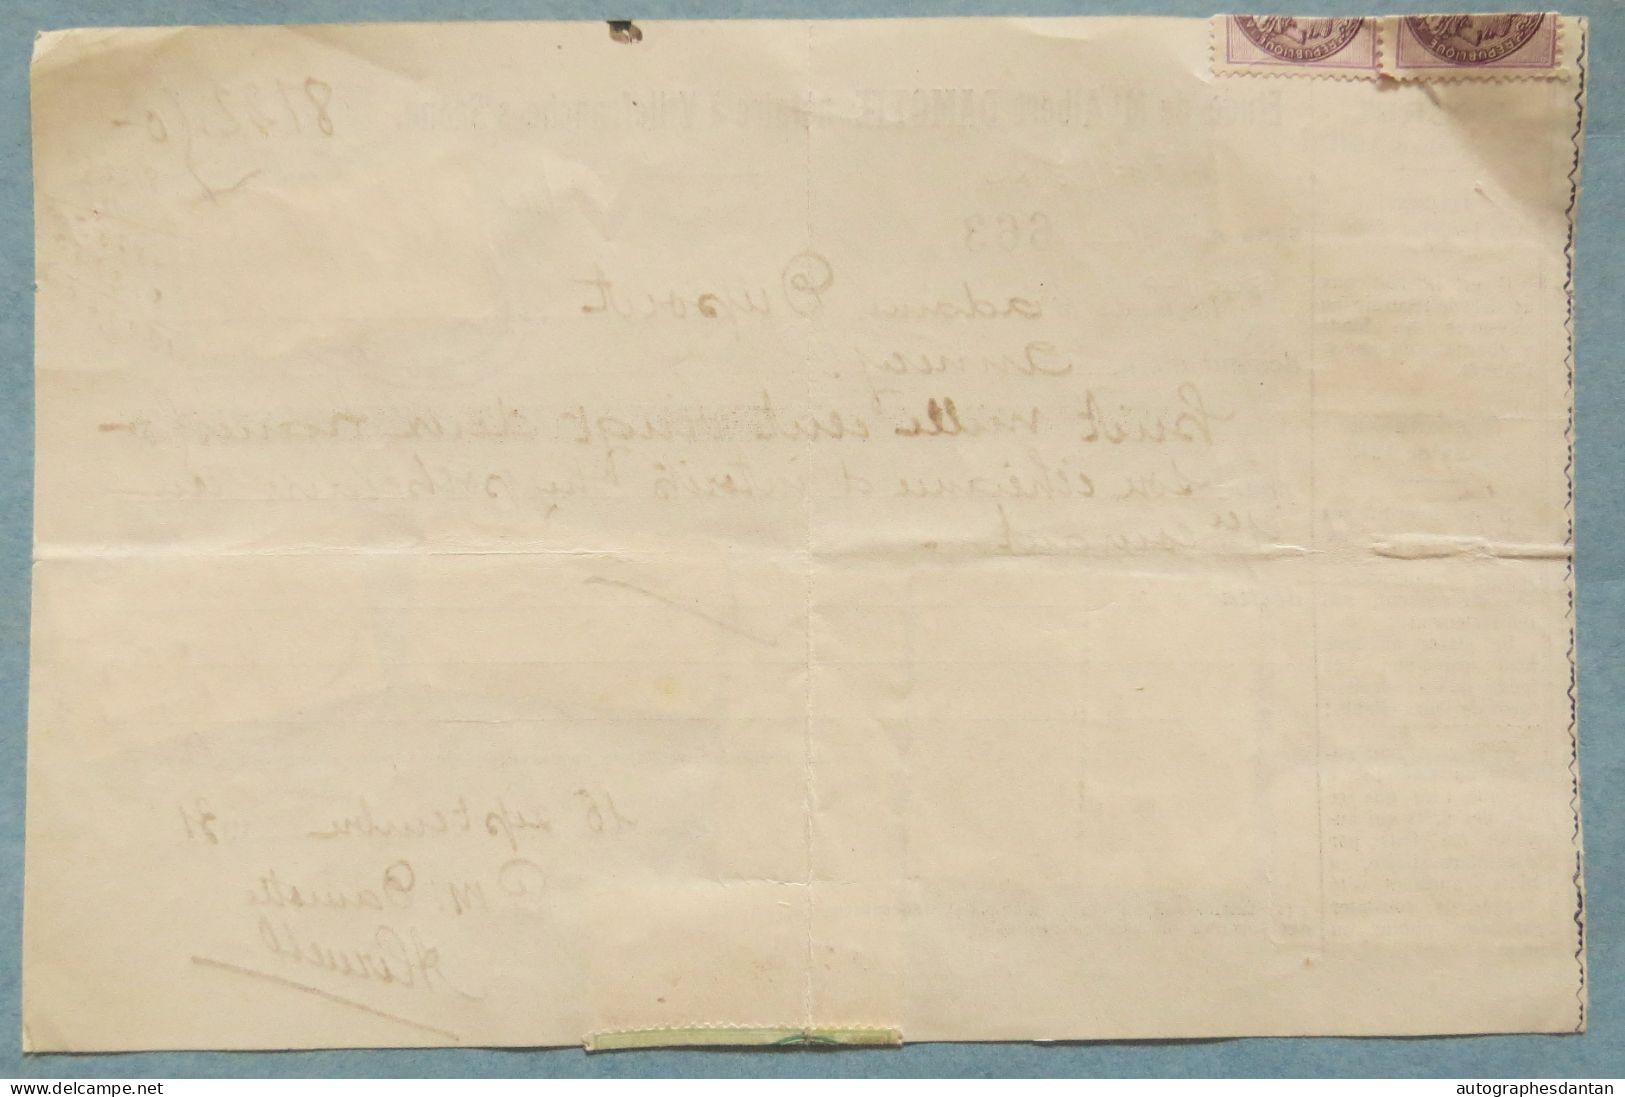 ● Fiscaux Sur Reçu 1931 Dont N° 48 49 Et 50 - Me Damotte Notaire à Villefranche Sur Saône - Annecy Mme Dupont Timbres - Briefe U. Dokumente